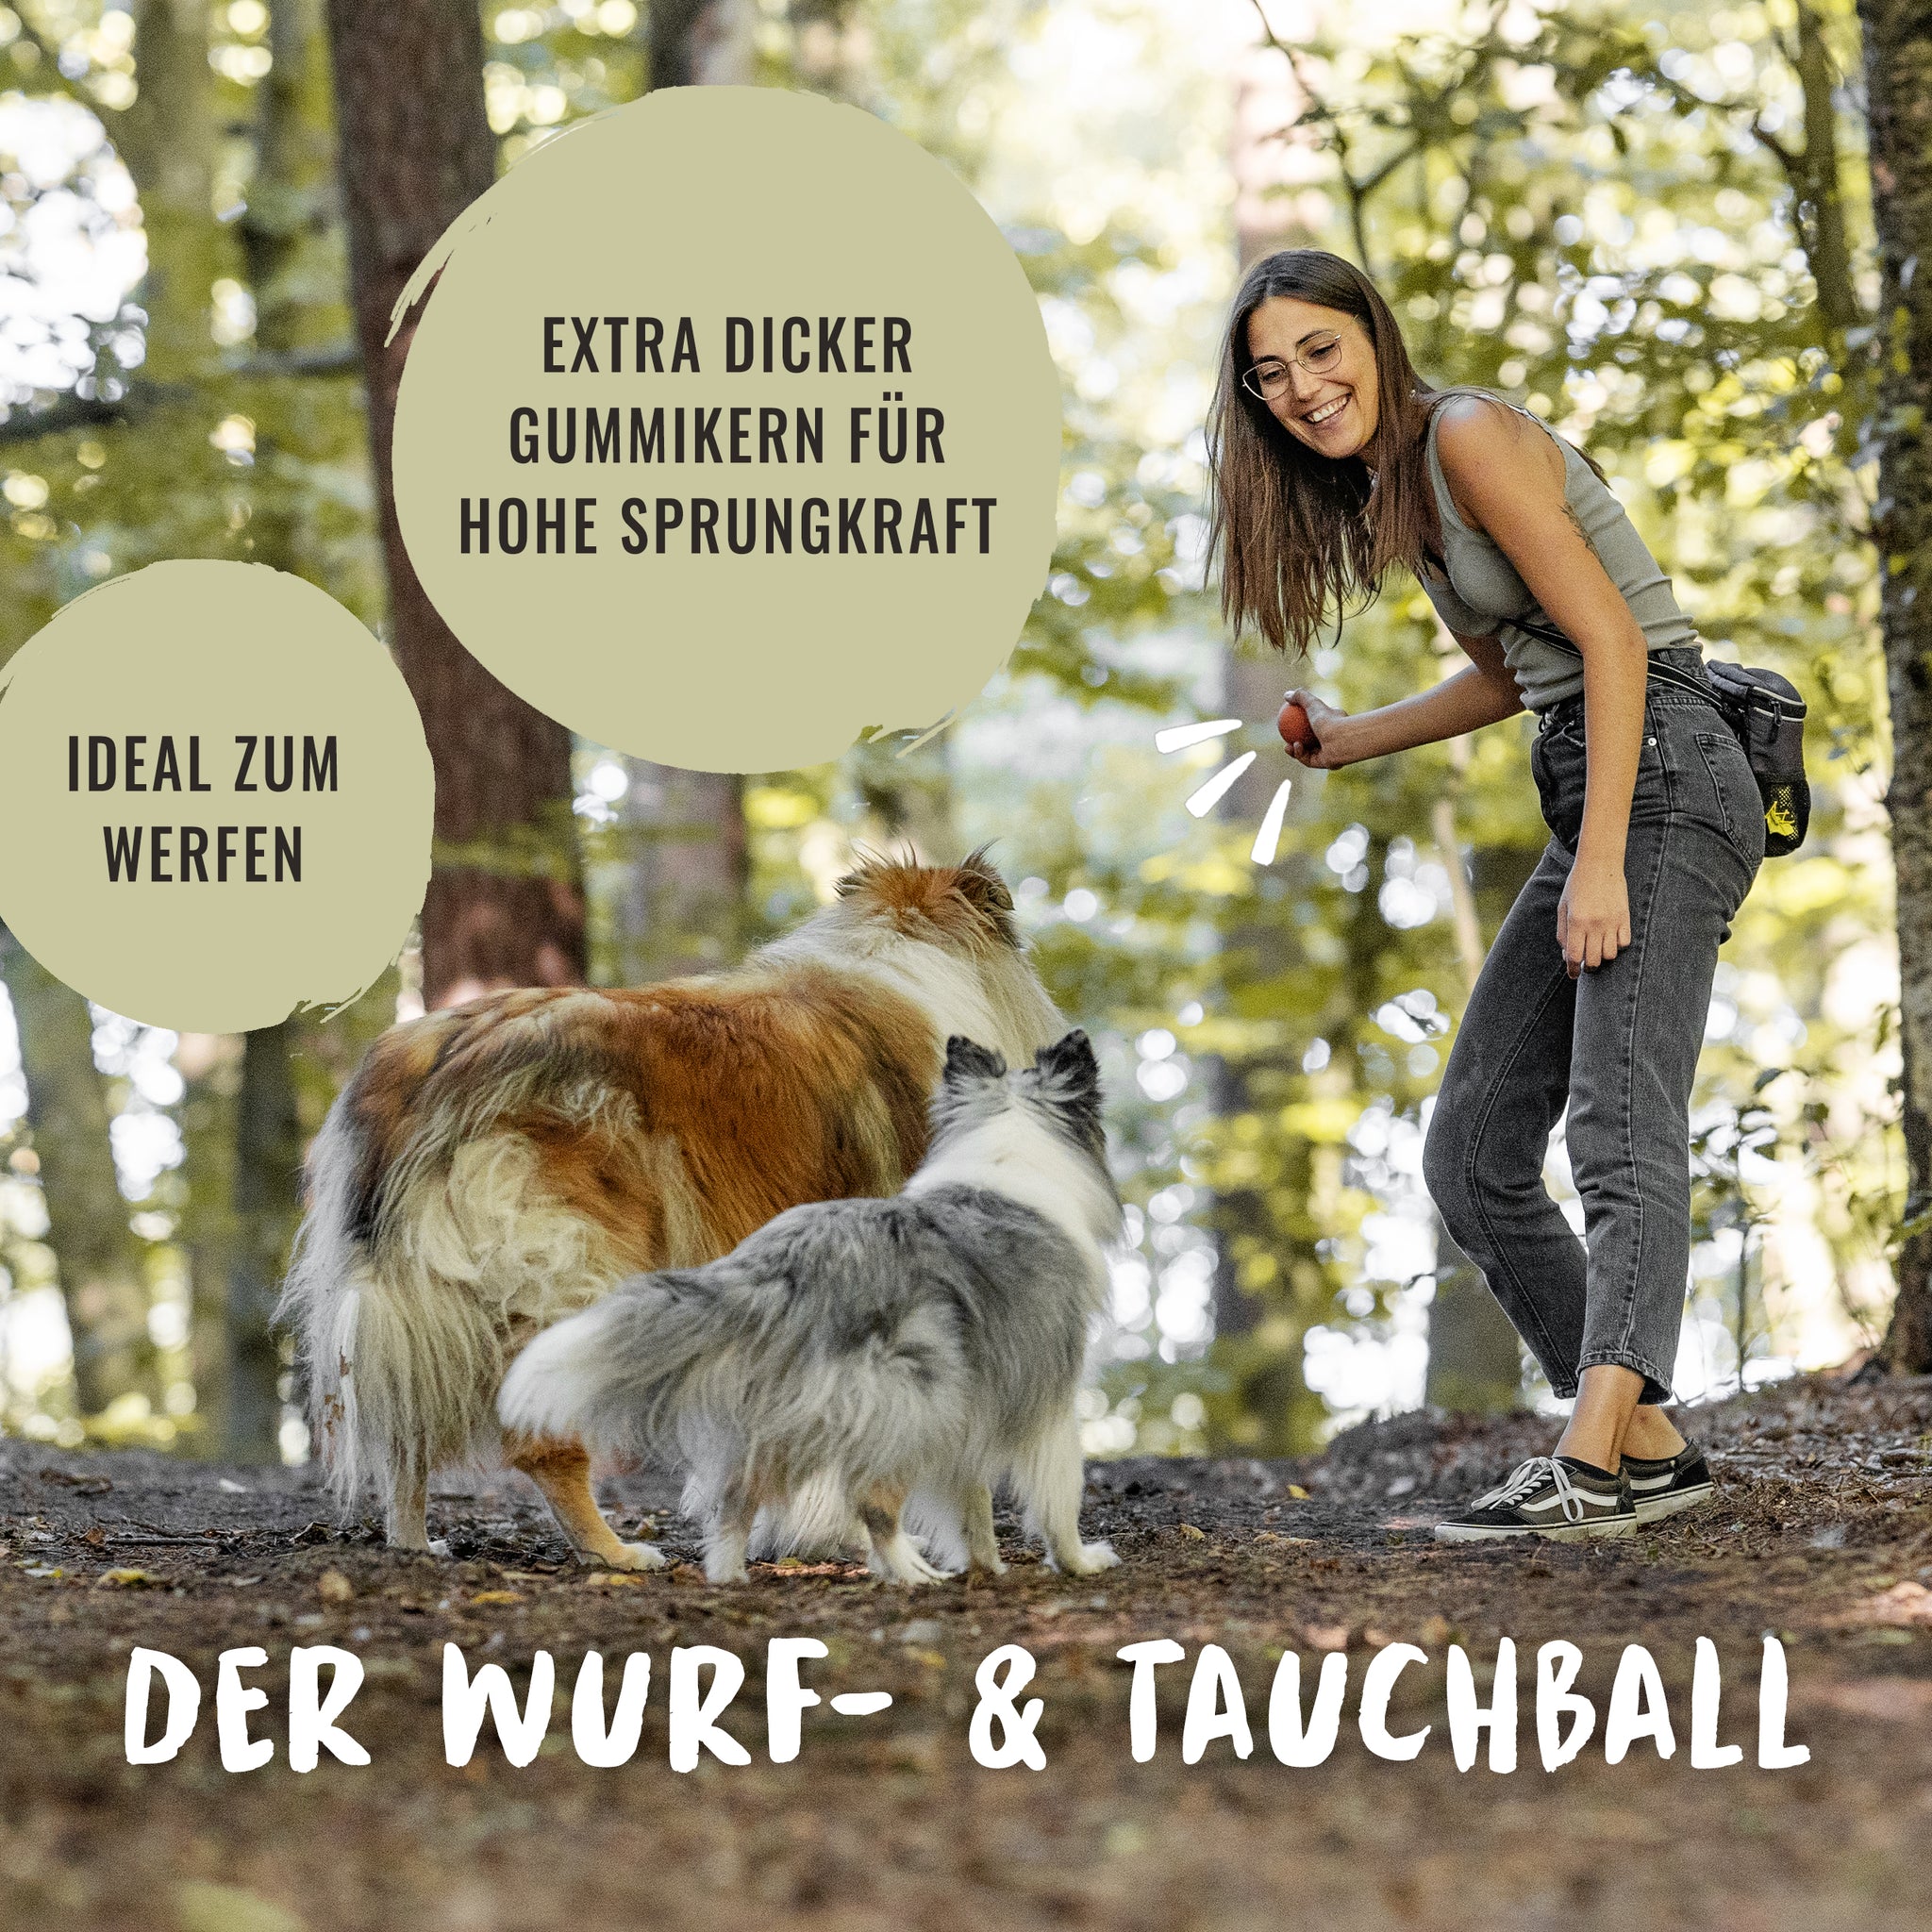 Der Hundeball von Rudelkönig ist als Wurf- und Tauchball das optimale Hundespielzeug beim Gassigehen und Hundetraining im Wald.